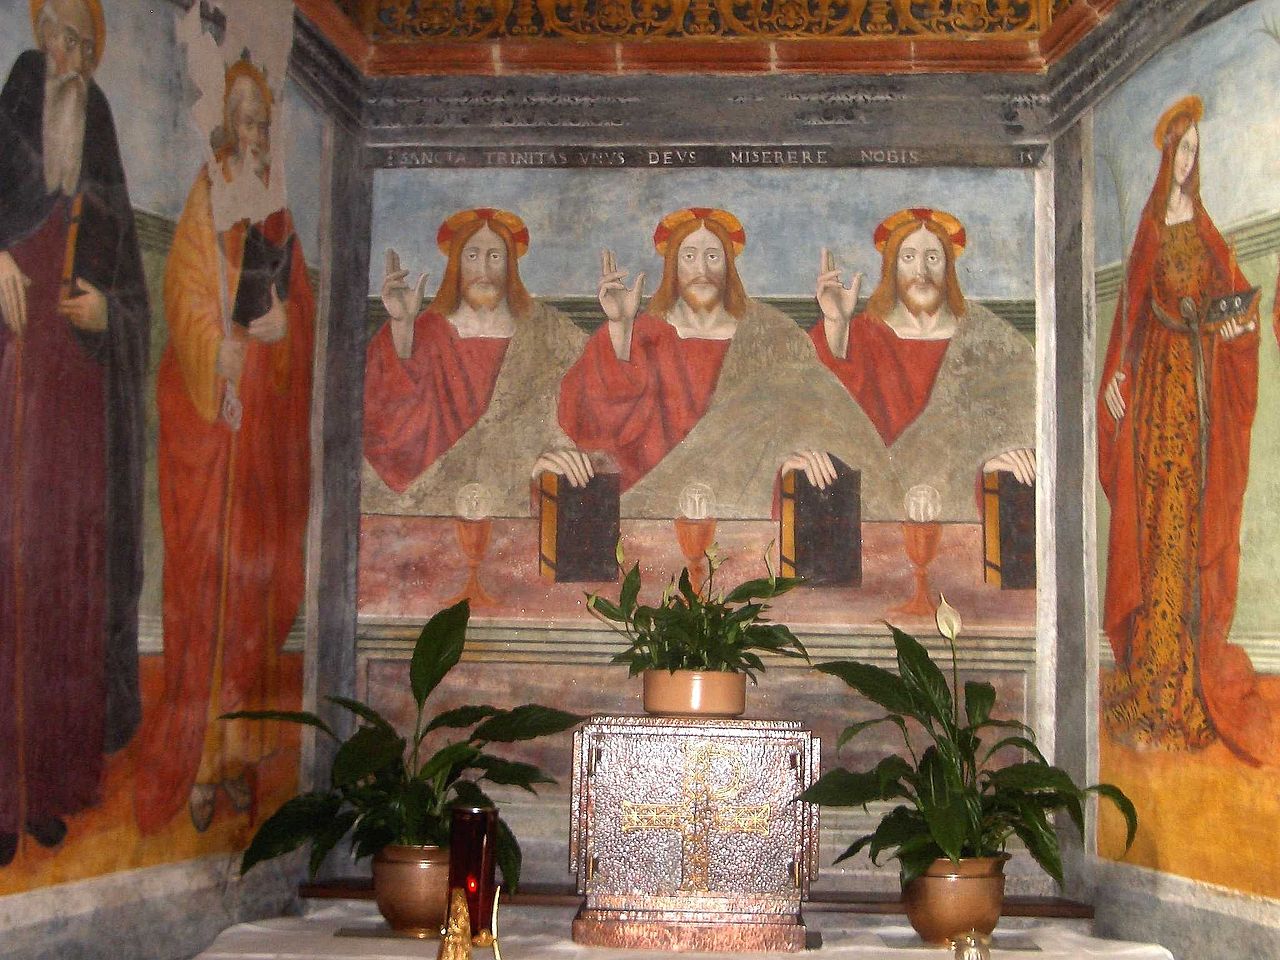 Imagen tríplice de Cristo: fresco de la escuela del pintor Defendente Ferrari, en la iglesia de la Santísima Trinidad de Brenna, siglo XVI